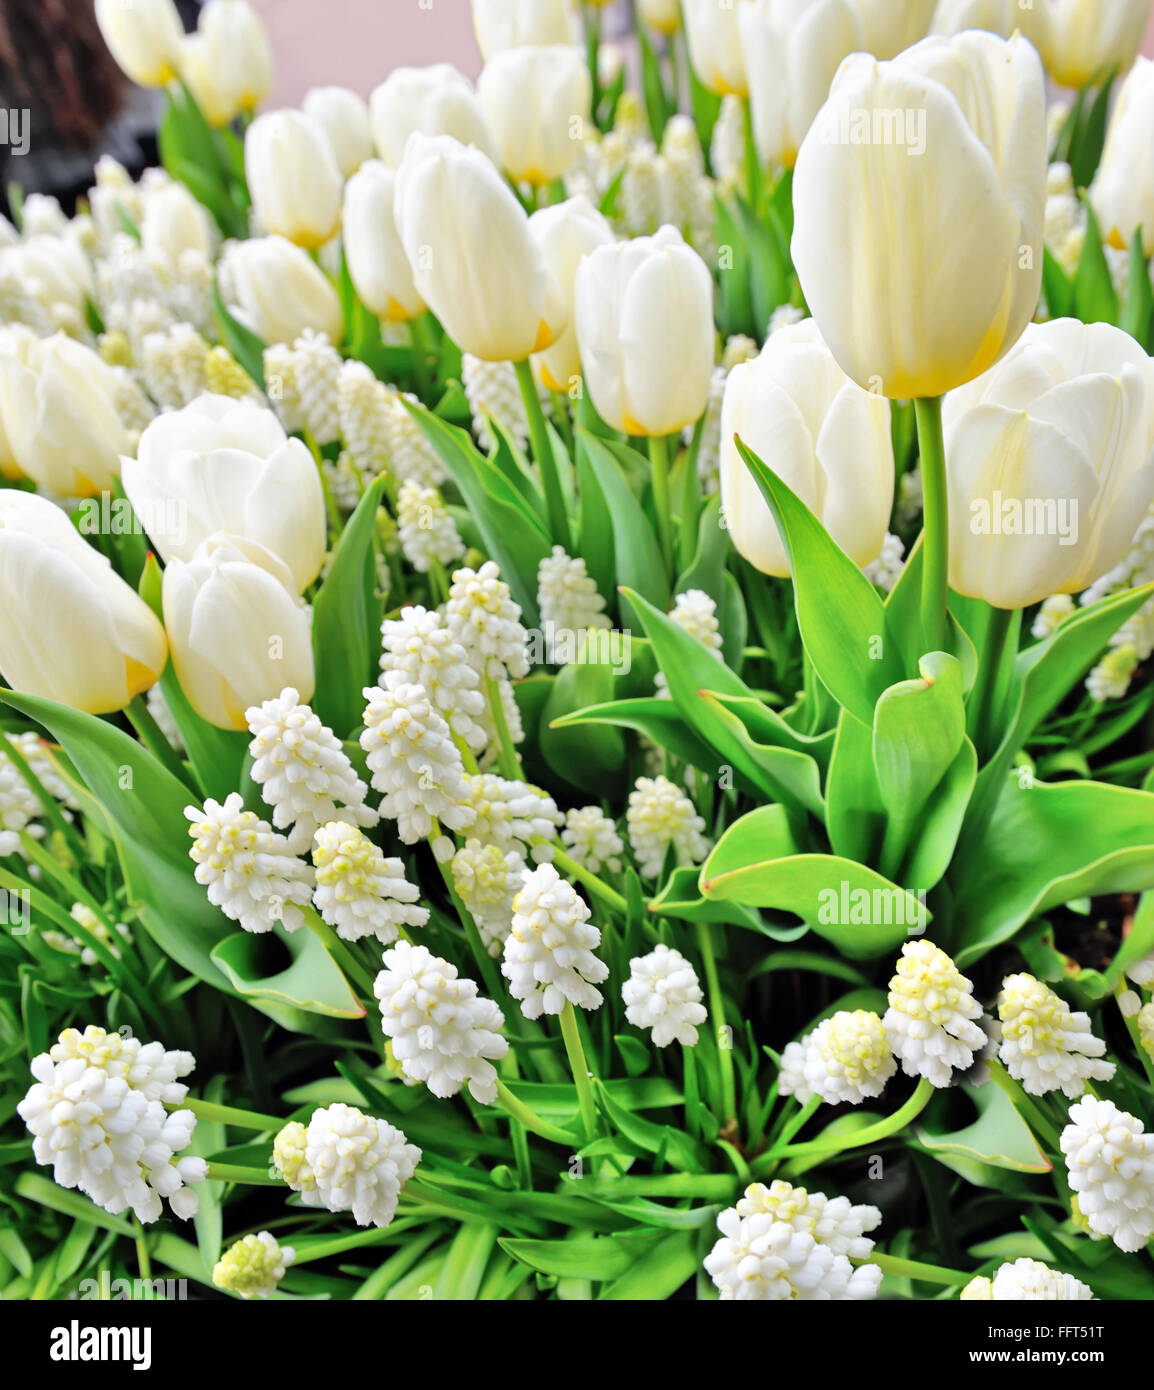 Tulipes blanches et muscari au printemps Banque D'Images